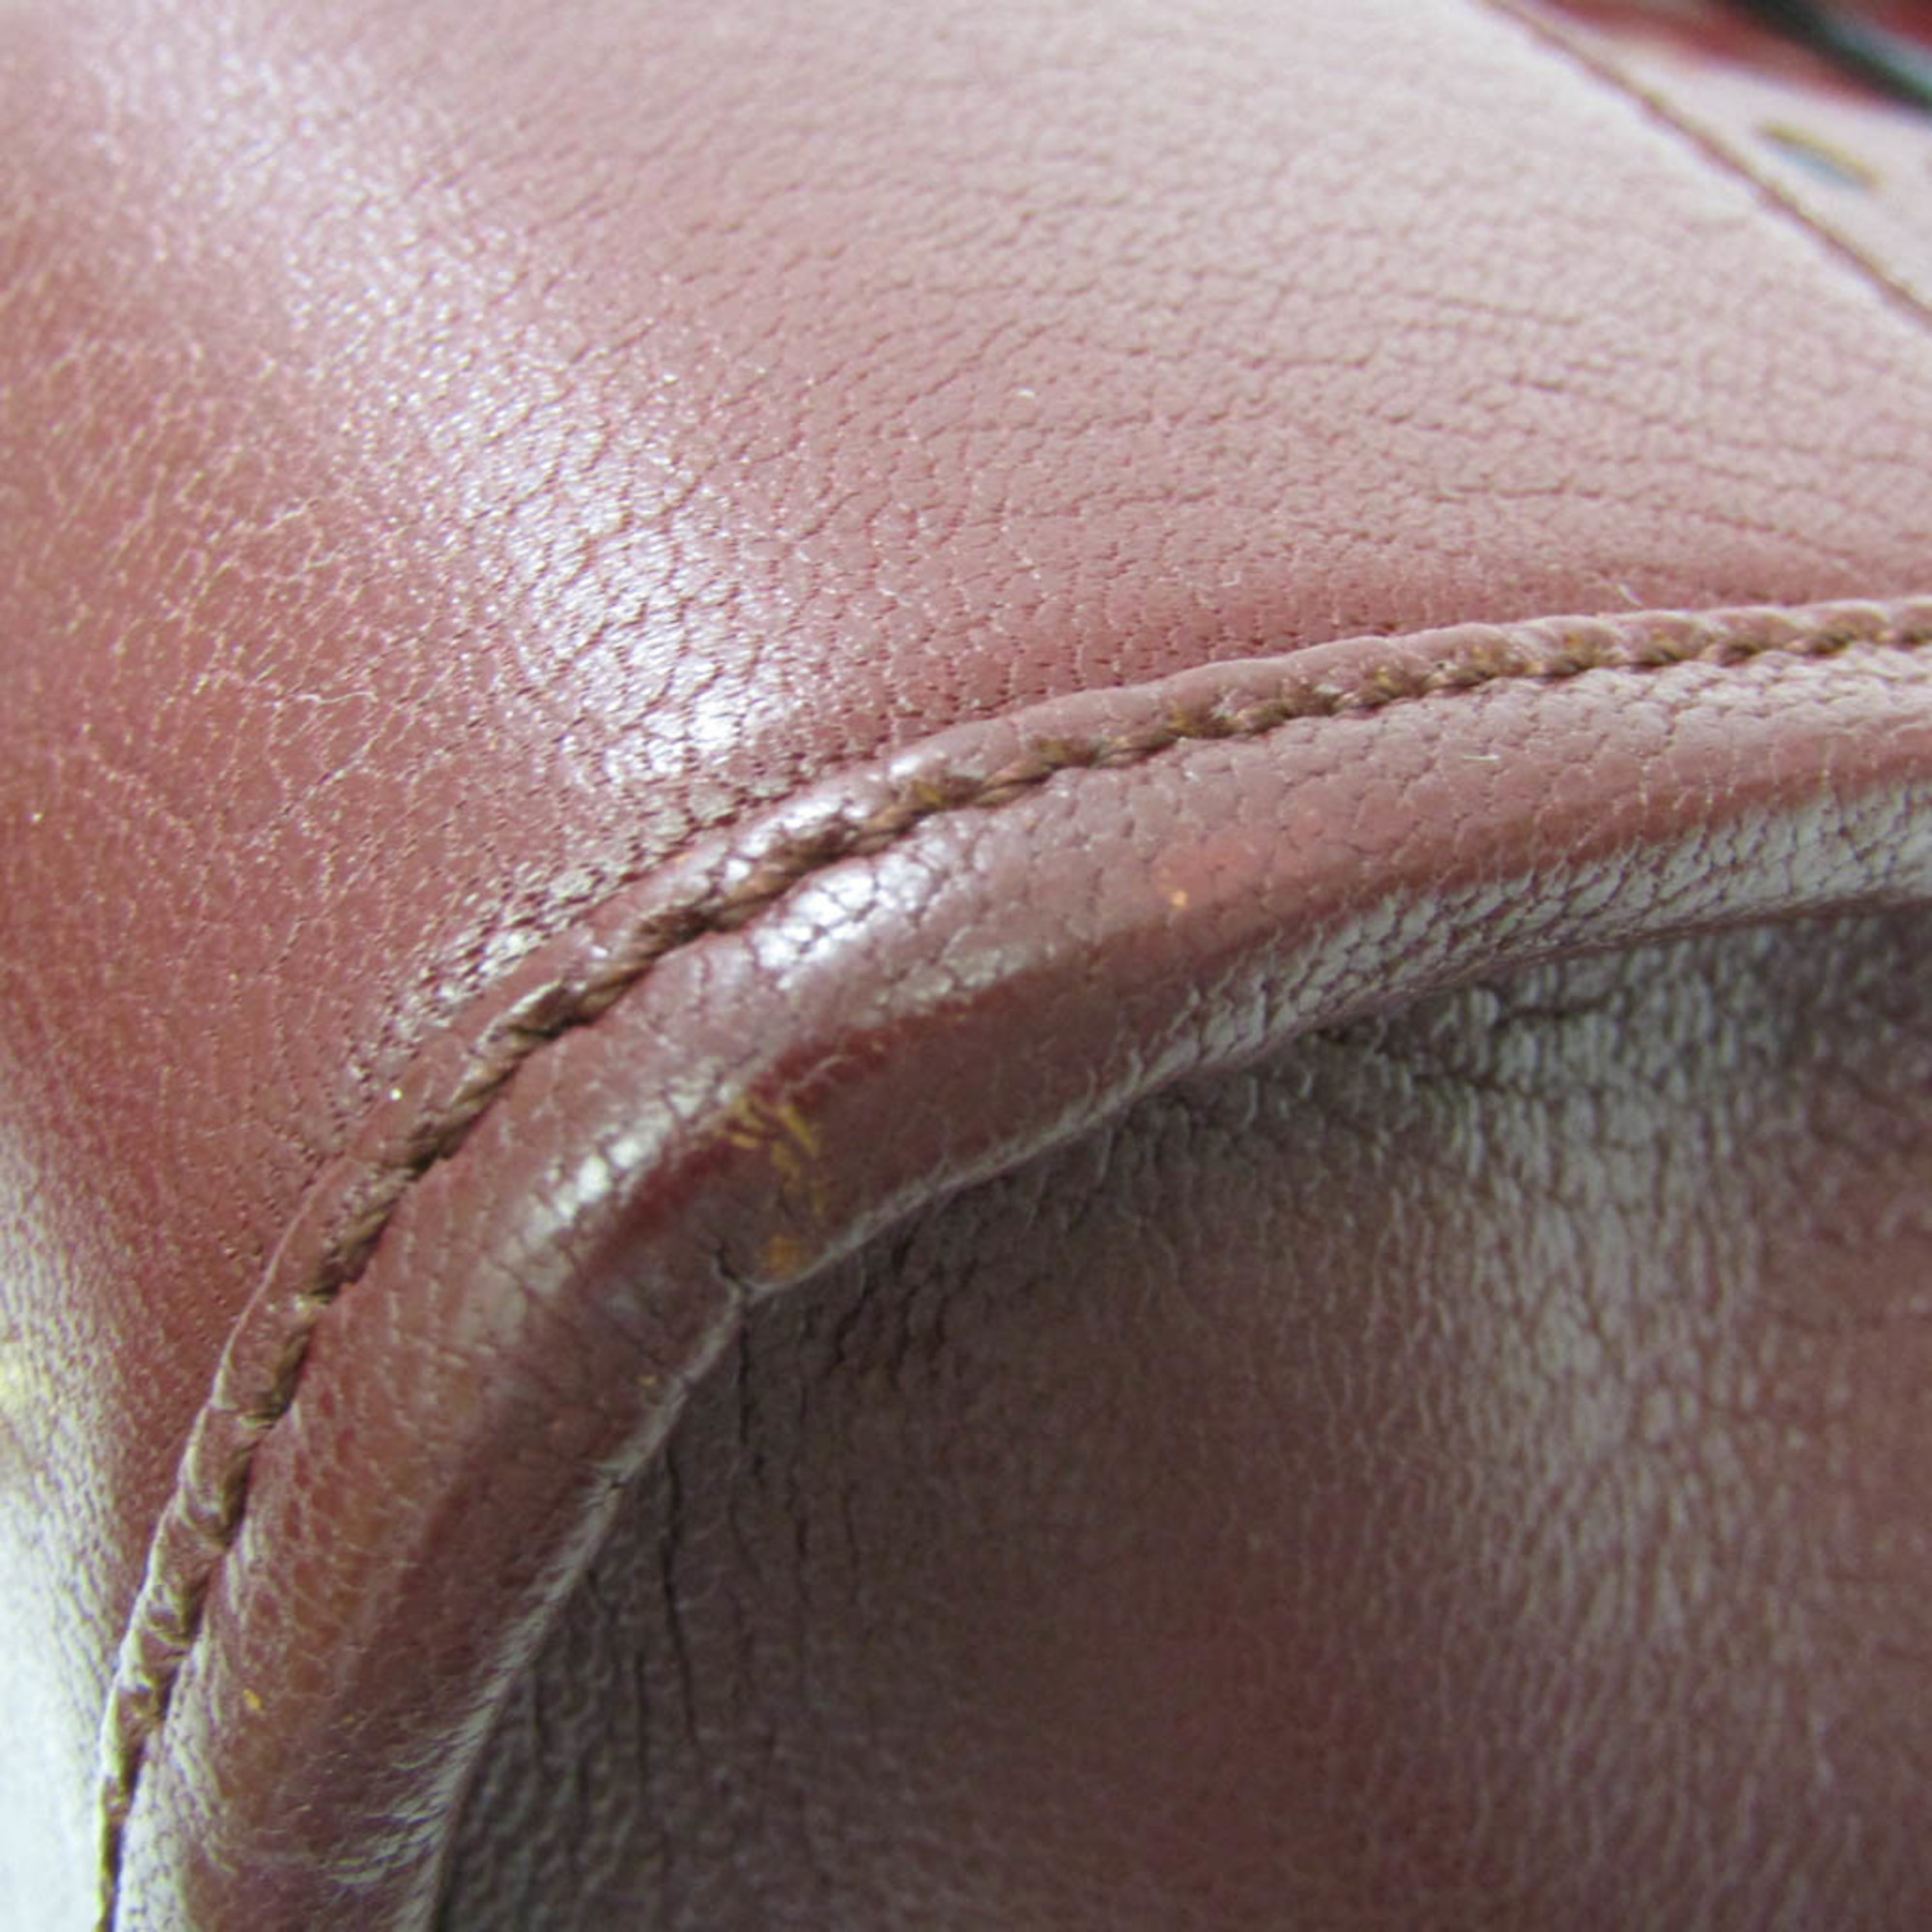 Loewe Amazona Punching Leather Women's Leather Handbag,Shoulder Bag Bordeaux